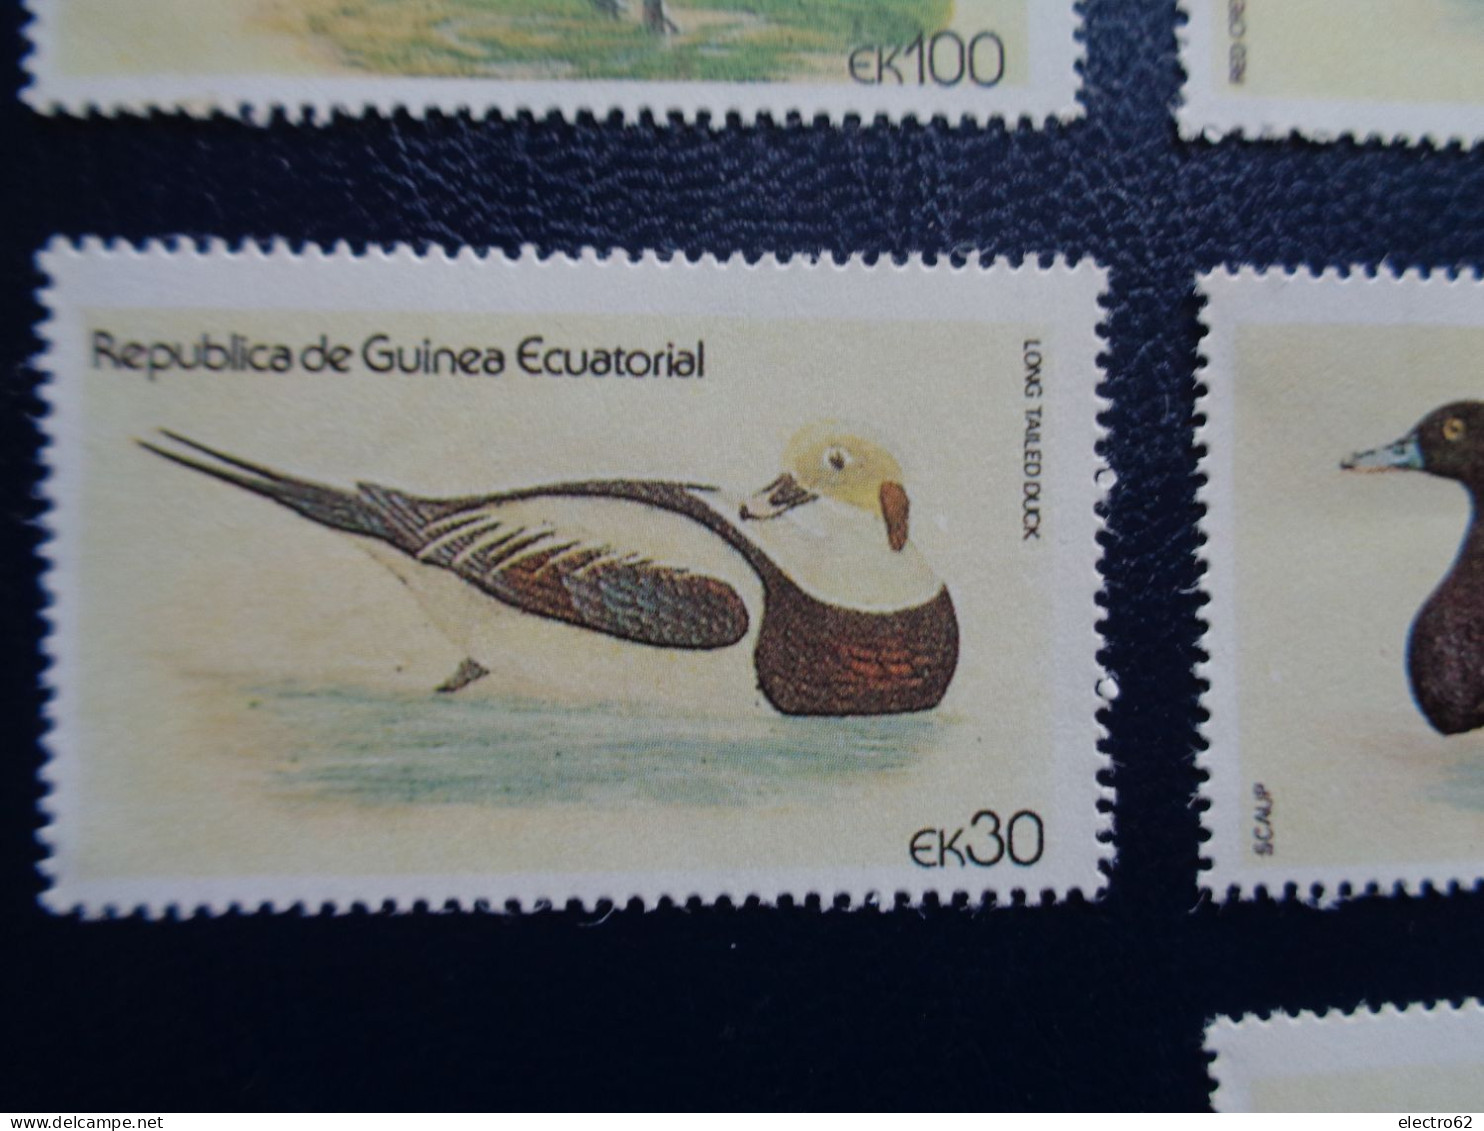 Guinée Equatoriale Canard Duck Ente Pato Anatra Eend Giappone And Guinea Ecuatorial - Patos